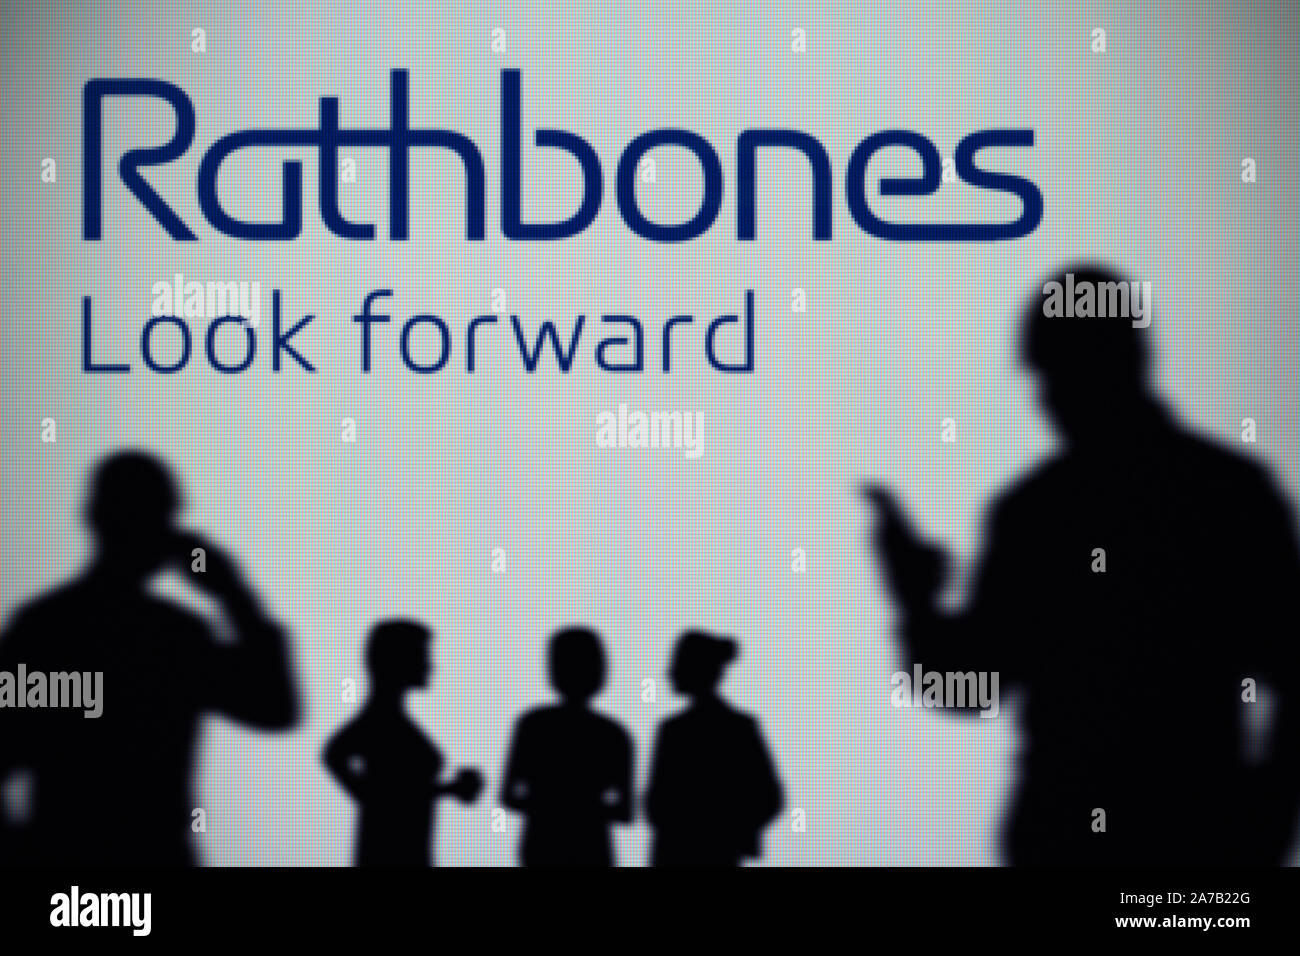 El Rathbone Brothers logo es visto en una pantalla LED en el fondo mientras una silueta persona utiliza un smartphone (uso Editorial solamente) Foto de stock